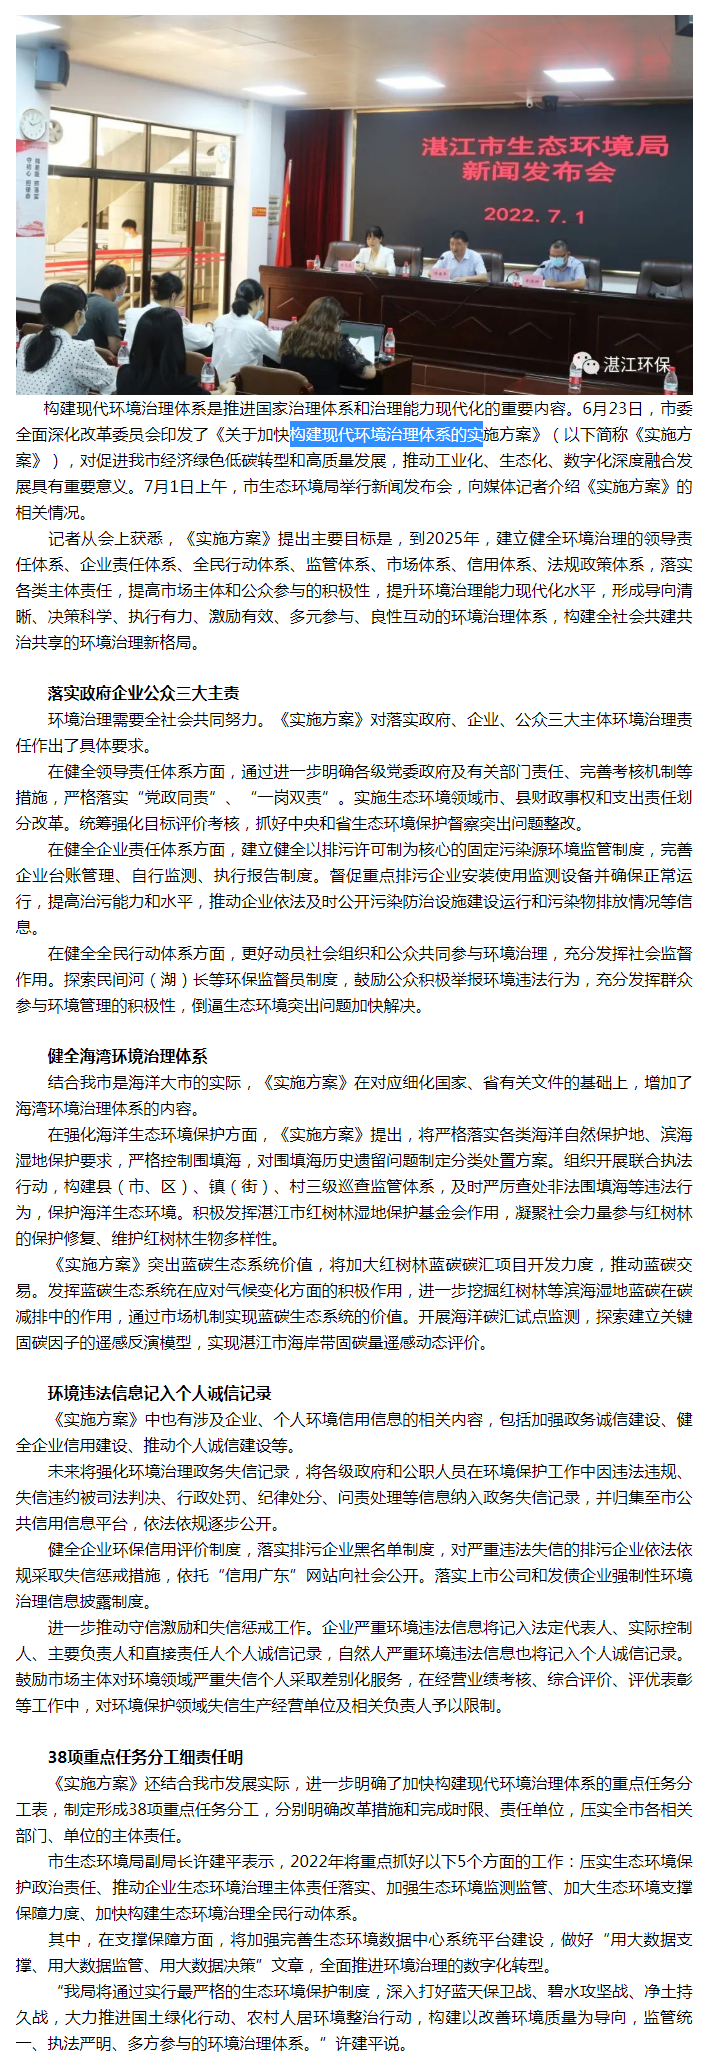 湛江市生态环境局举行新闻发布会.png